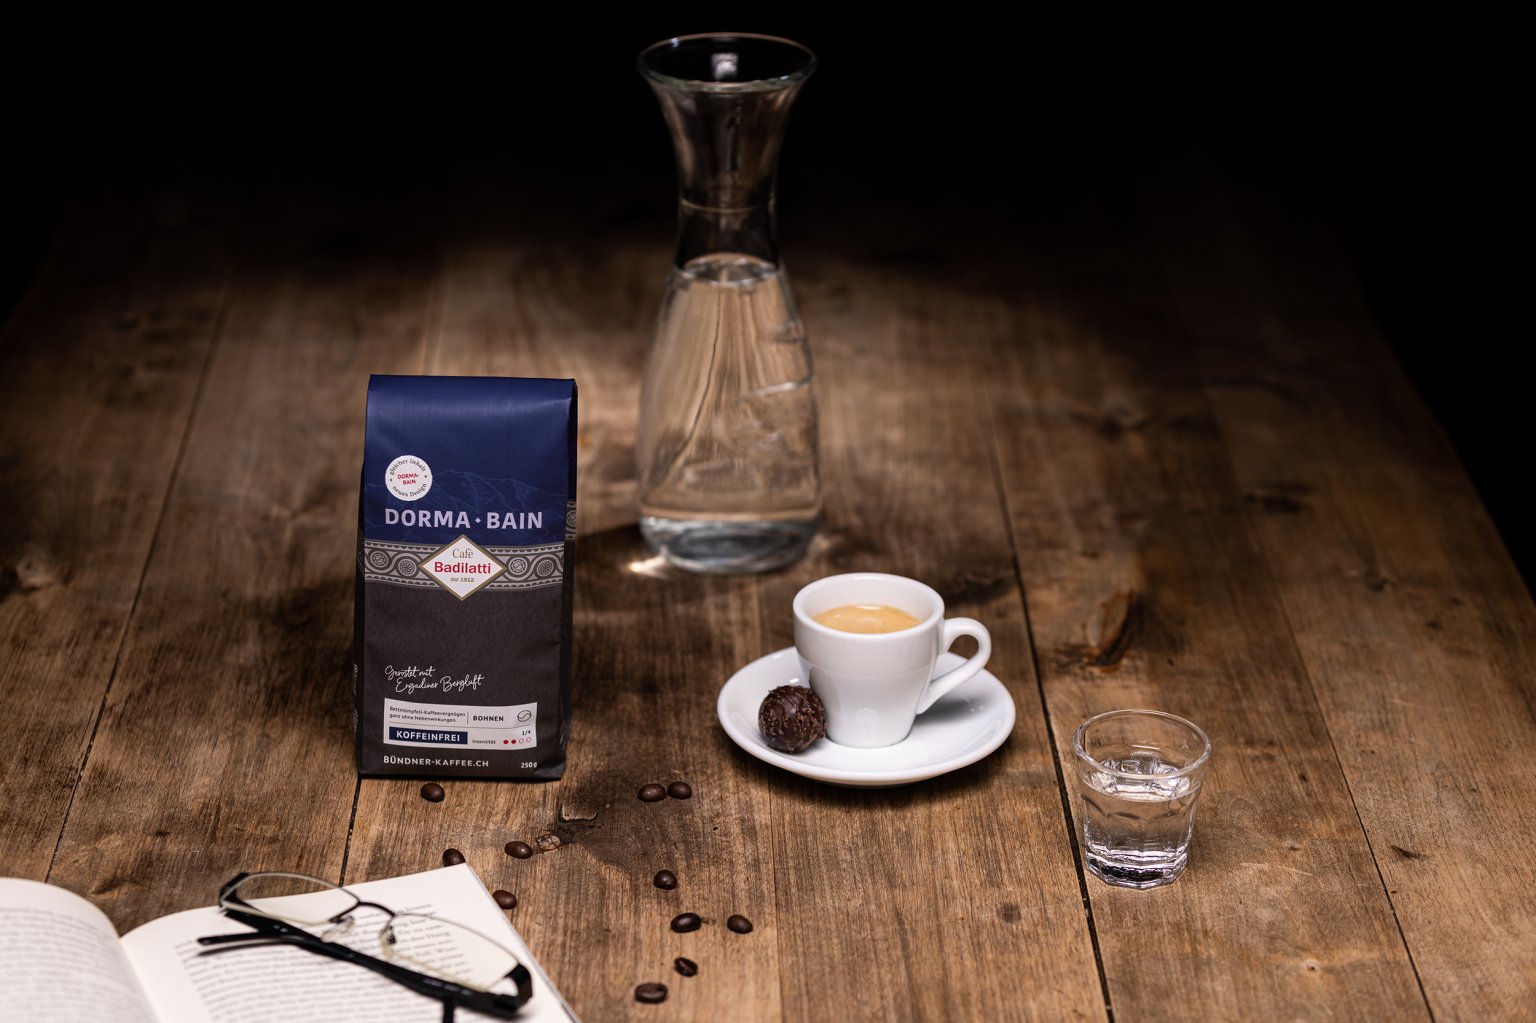 Koffeinfreier Espresso mit feiner Truffe-Praline, aufgeschlagenes Buch mit Lesebrille und Dorma Bain Kaffeebohnen von Cafè Badilatti.